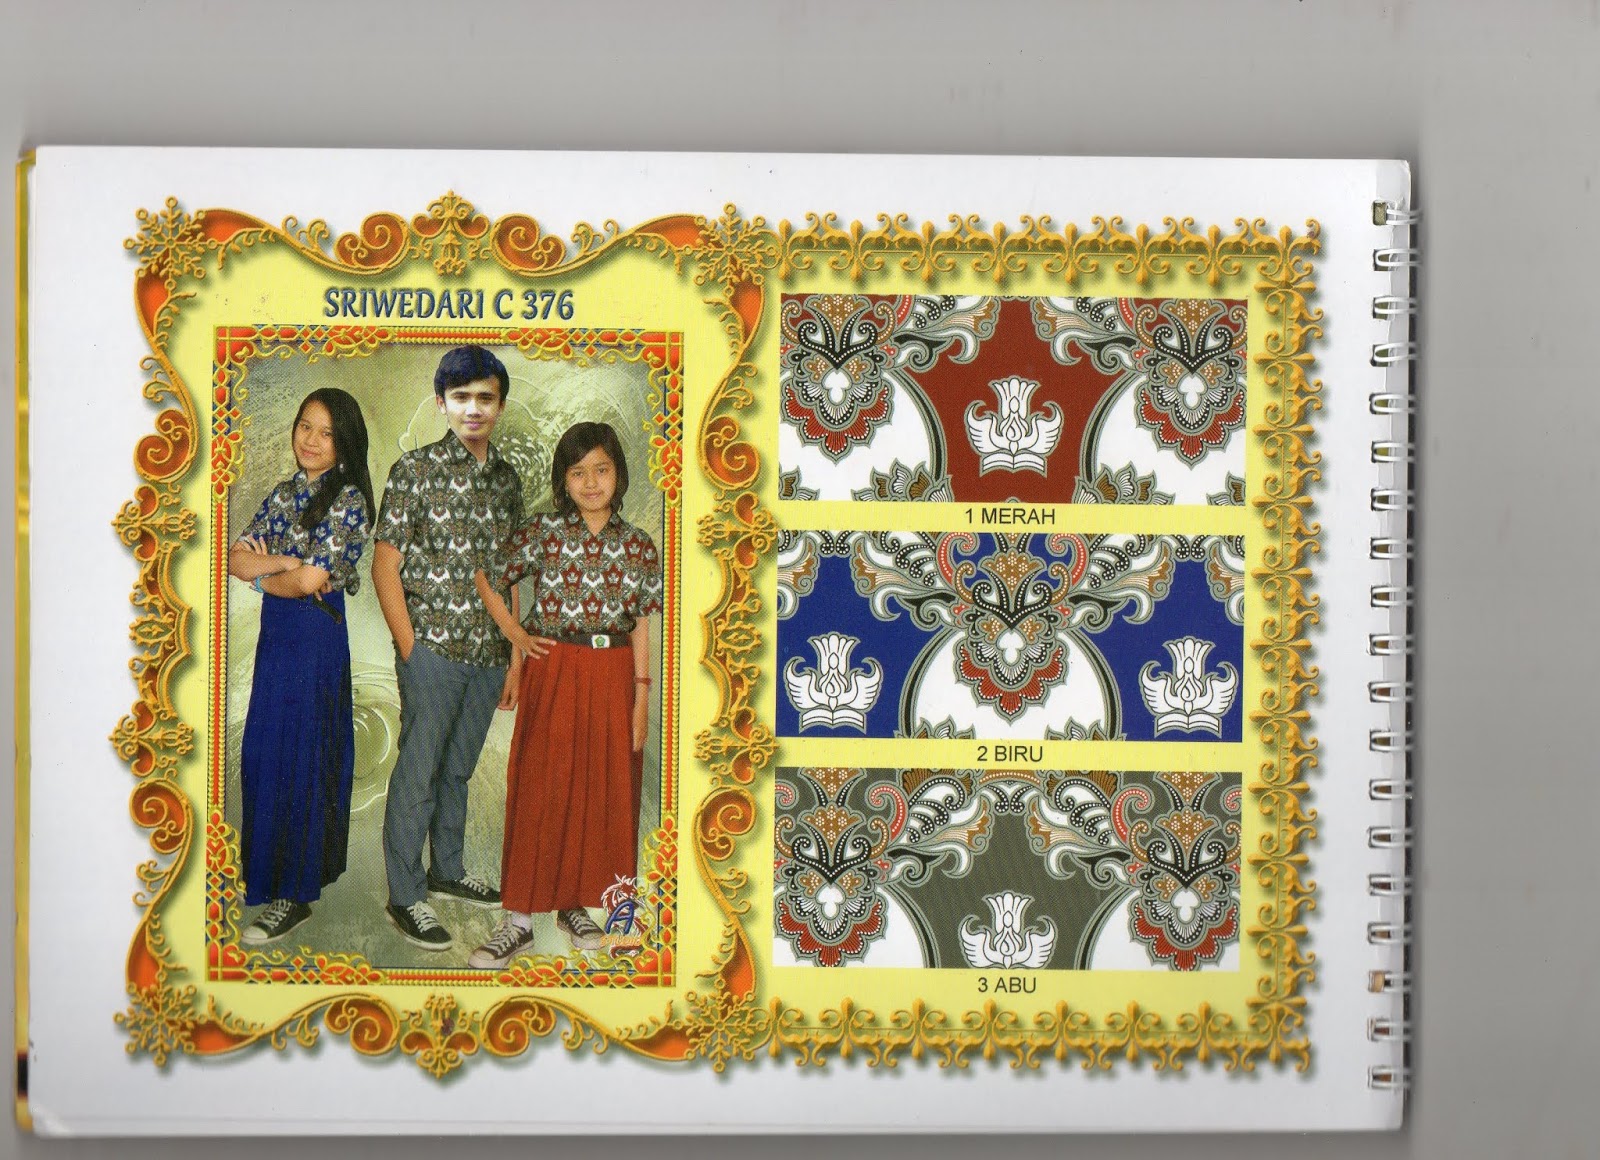  Seragam  batik  motif nasional untuk sekolah  dan umum 